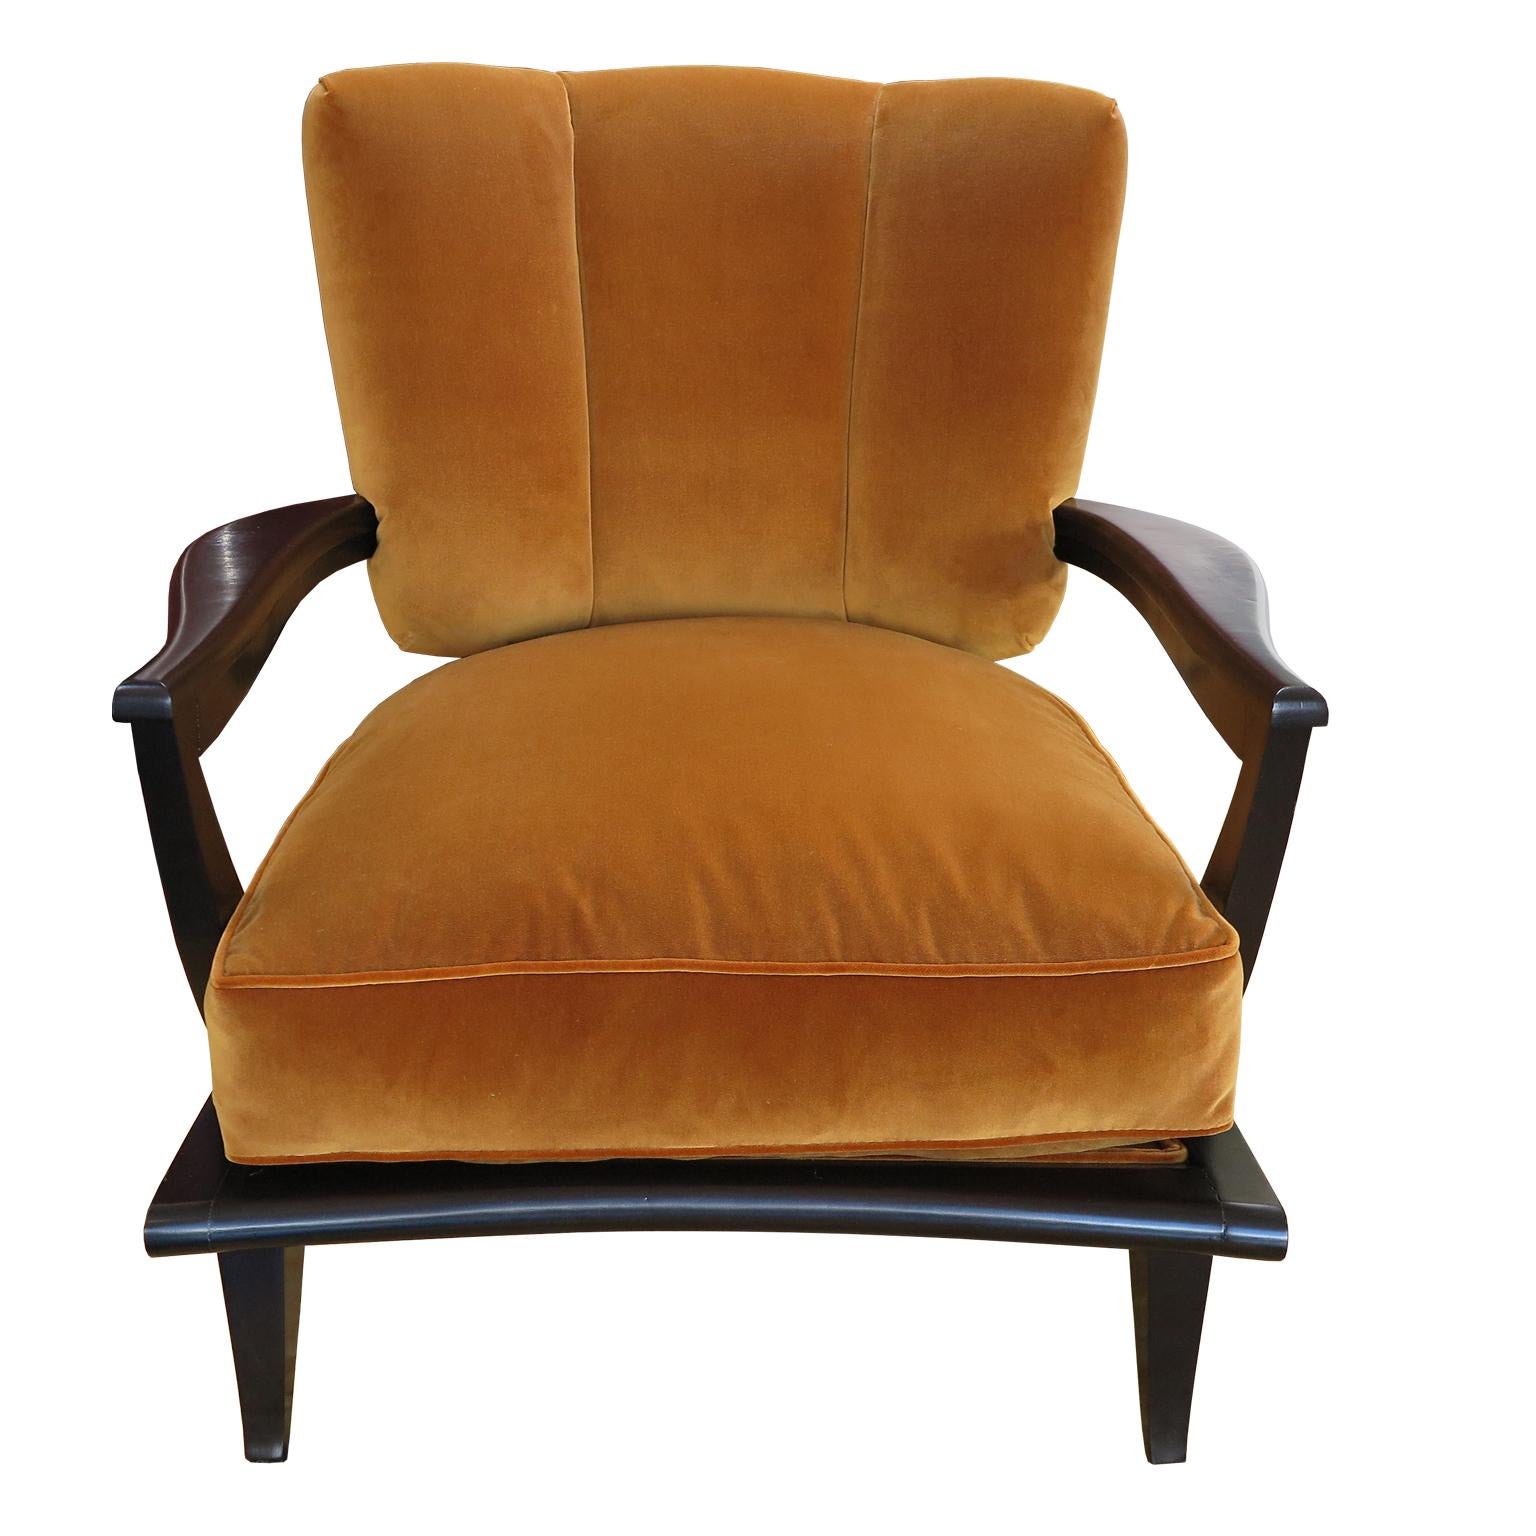 Zwei niedrige Sessel, Modell SK40, entworfen von Etienne-Henri Martin und hergestellt von Steiner, Frankreich 1952. Diese Stühle haben einen Rahmen aus dunklem, espresso-gebeiztem und satiniertem Palisanderholz.  Sie zeigen eine gewölbte Rückenlehne